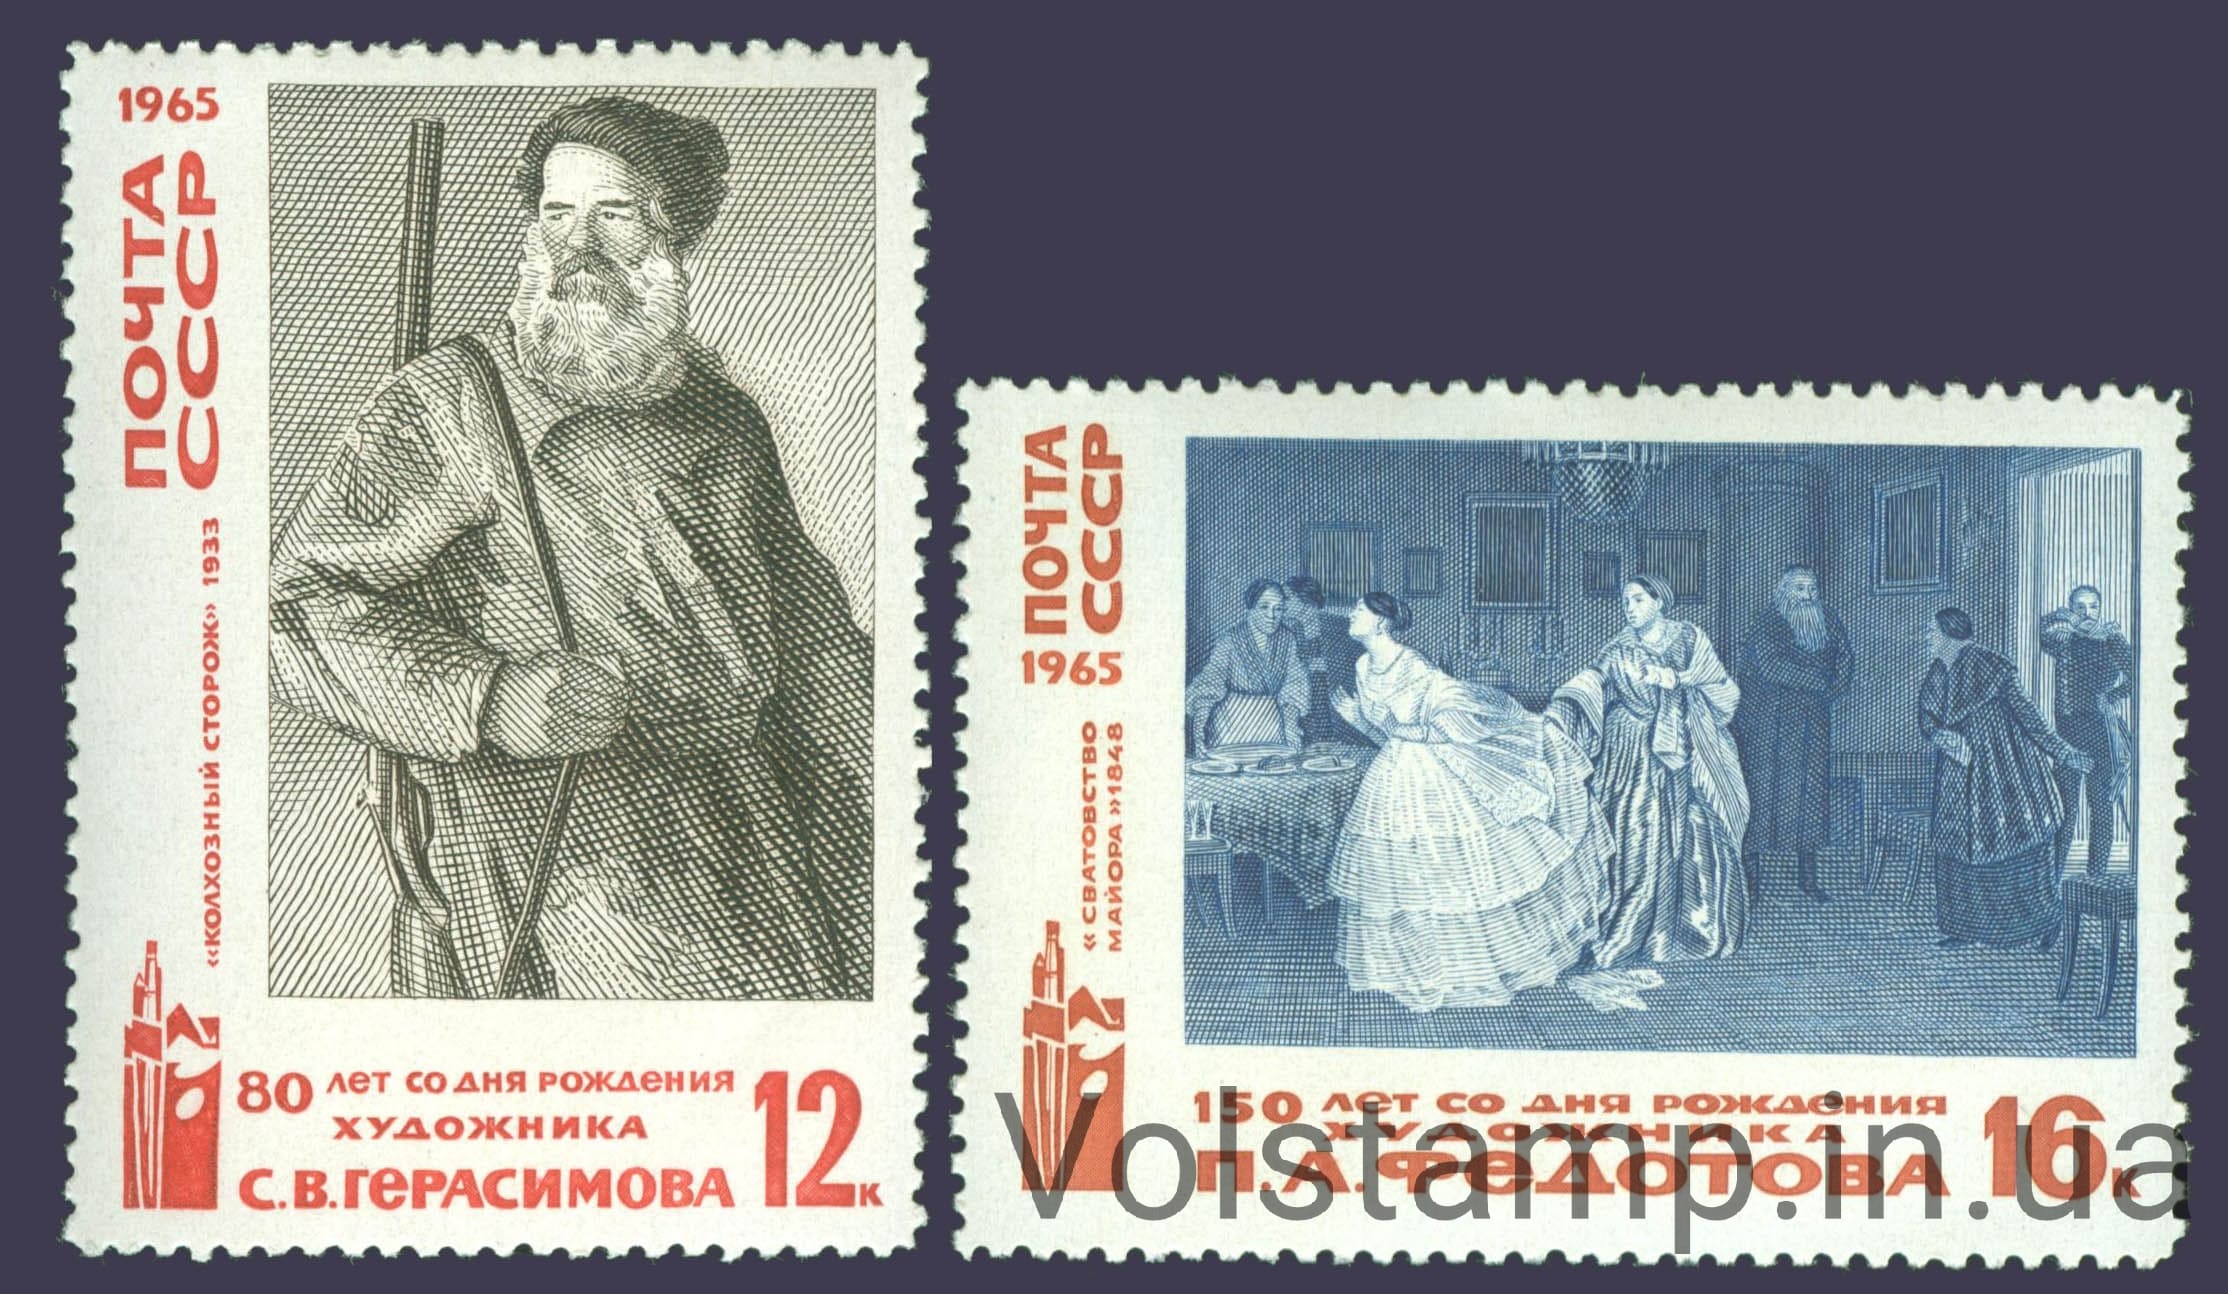 1965 серия марок Русское изобразительное искусство №3219-3220